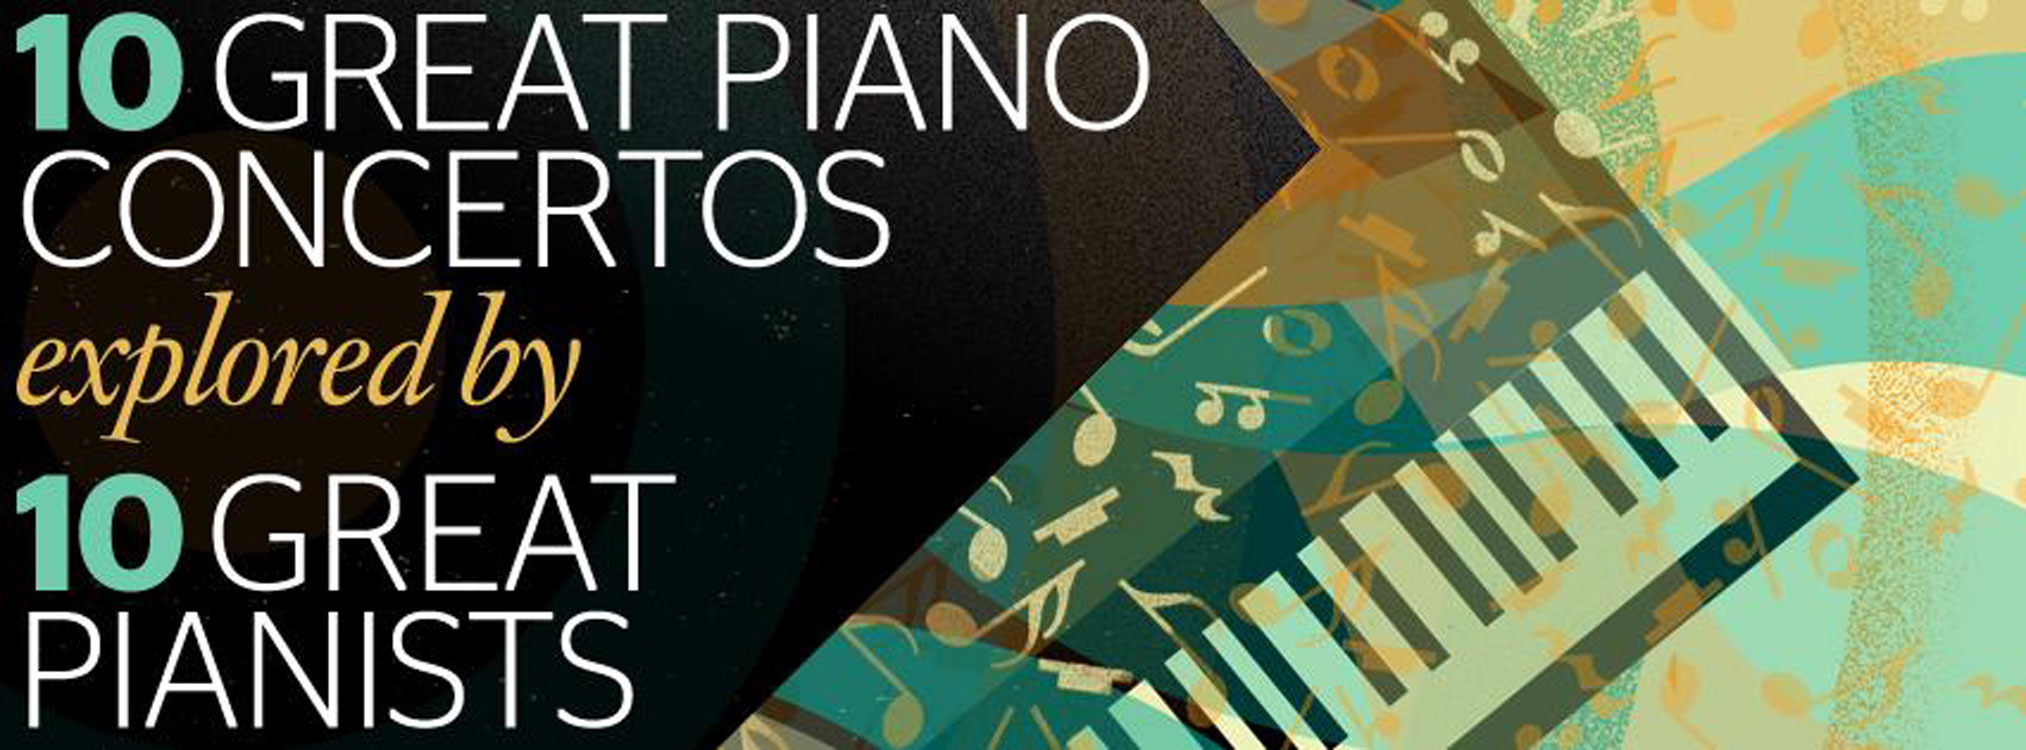 great piano concertos